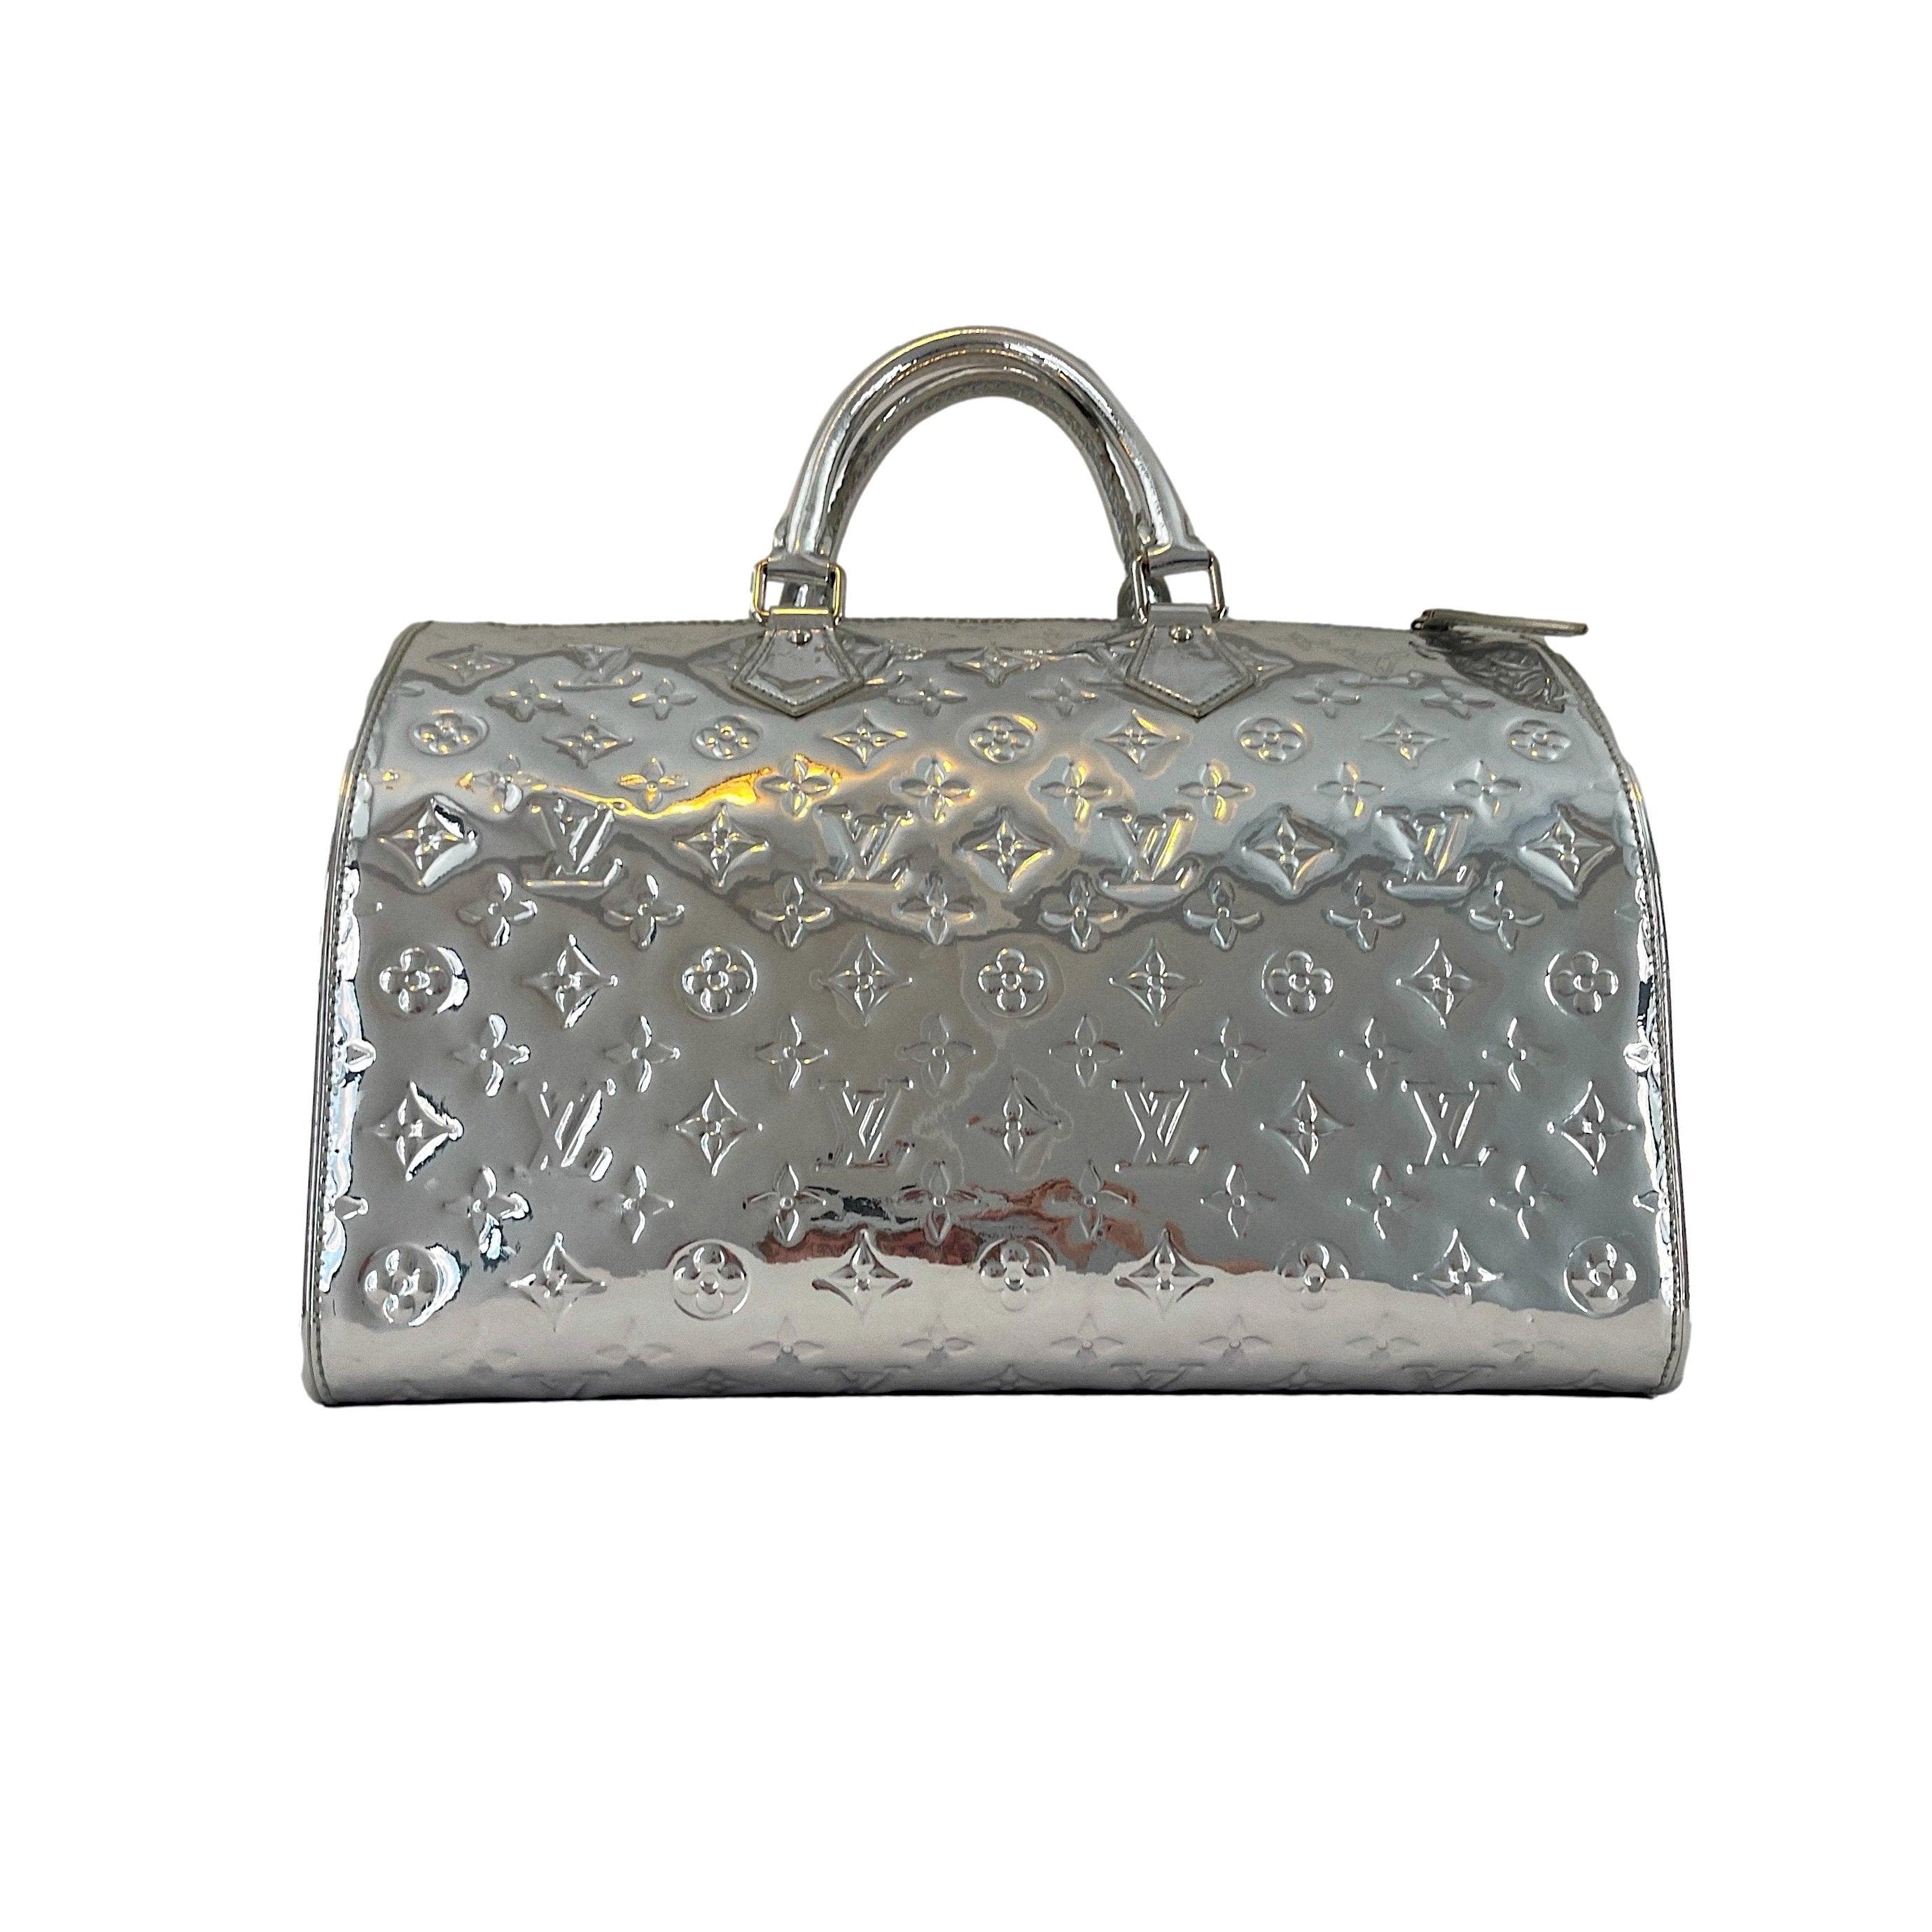 Louis Vuitton Silver Miroir Speedy Bag